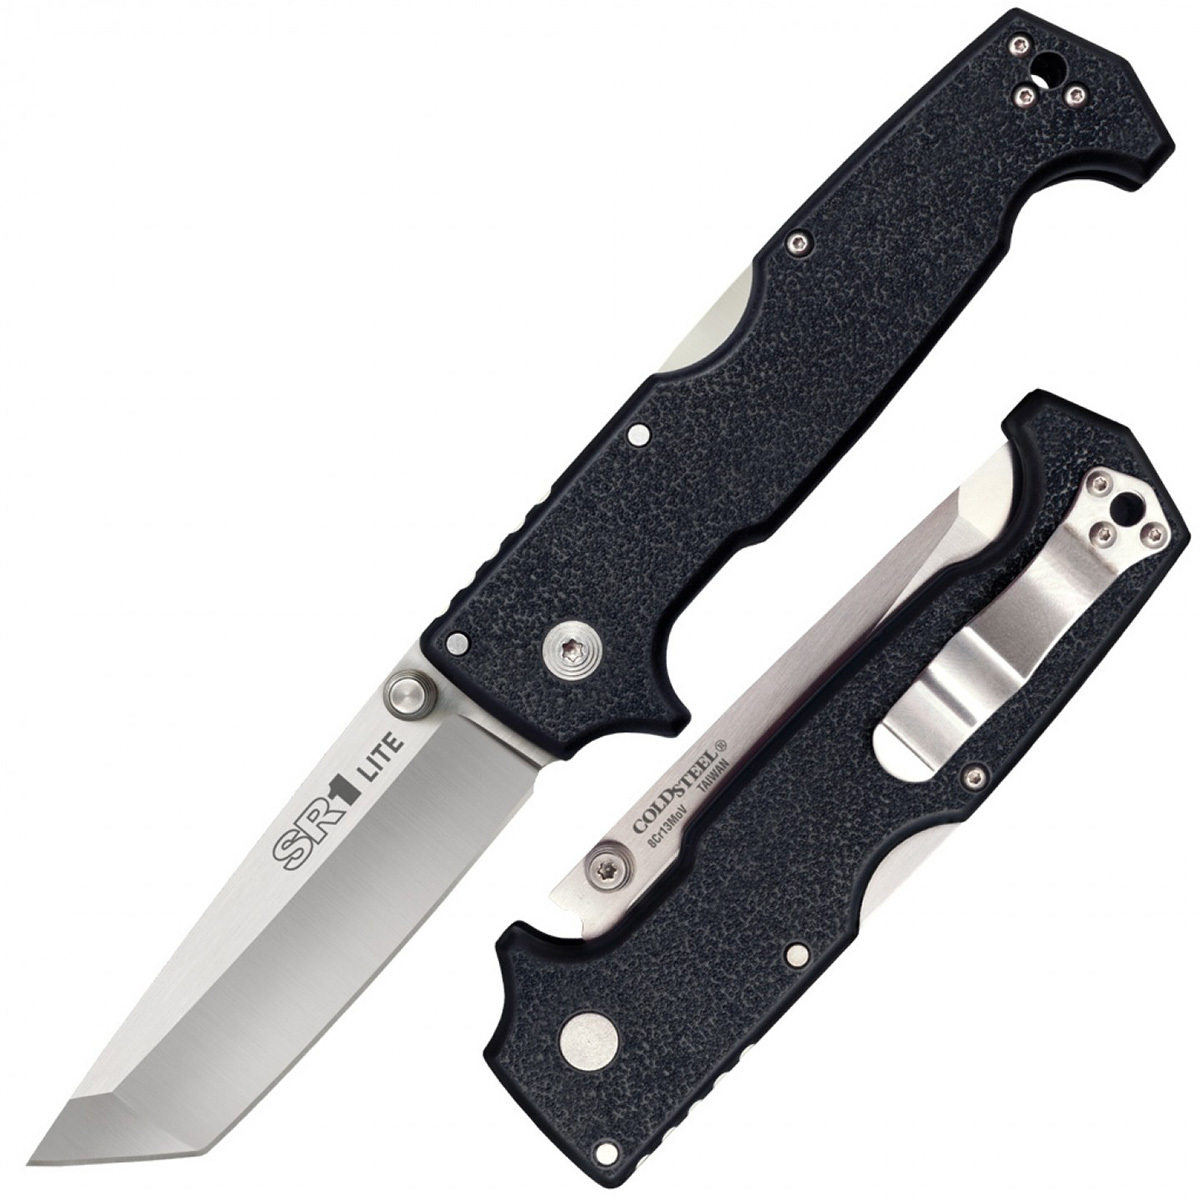 Нож складной Cold Steel SR-1 Lite Tanto, сталь 8Cr13MoV, рукоять grivory, black, Бренды, Cold Steel